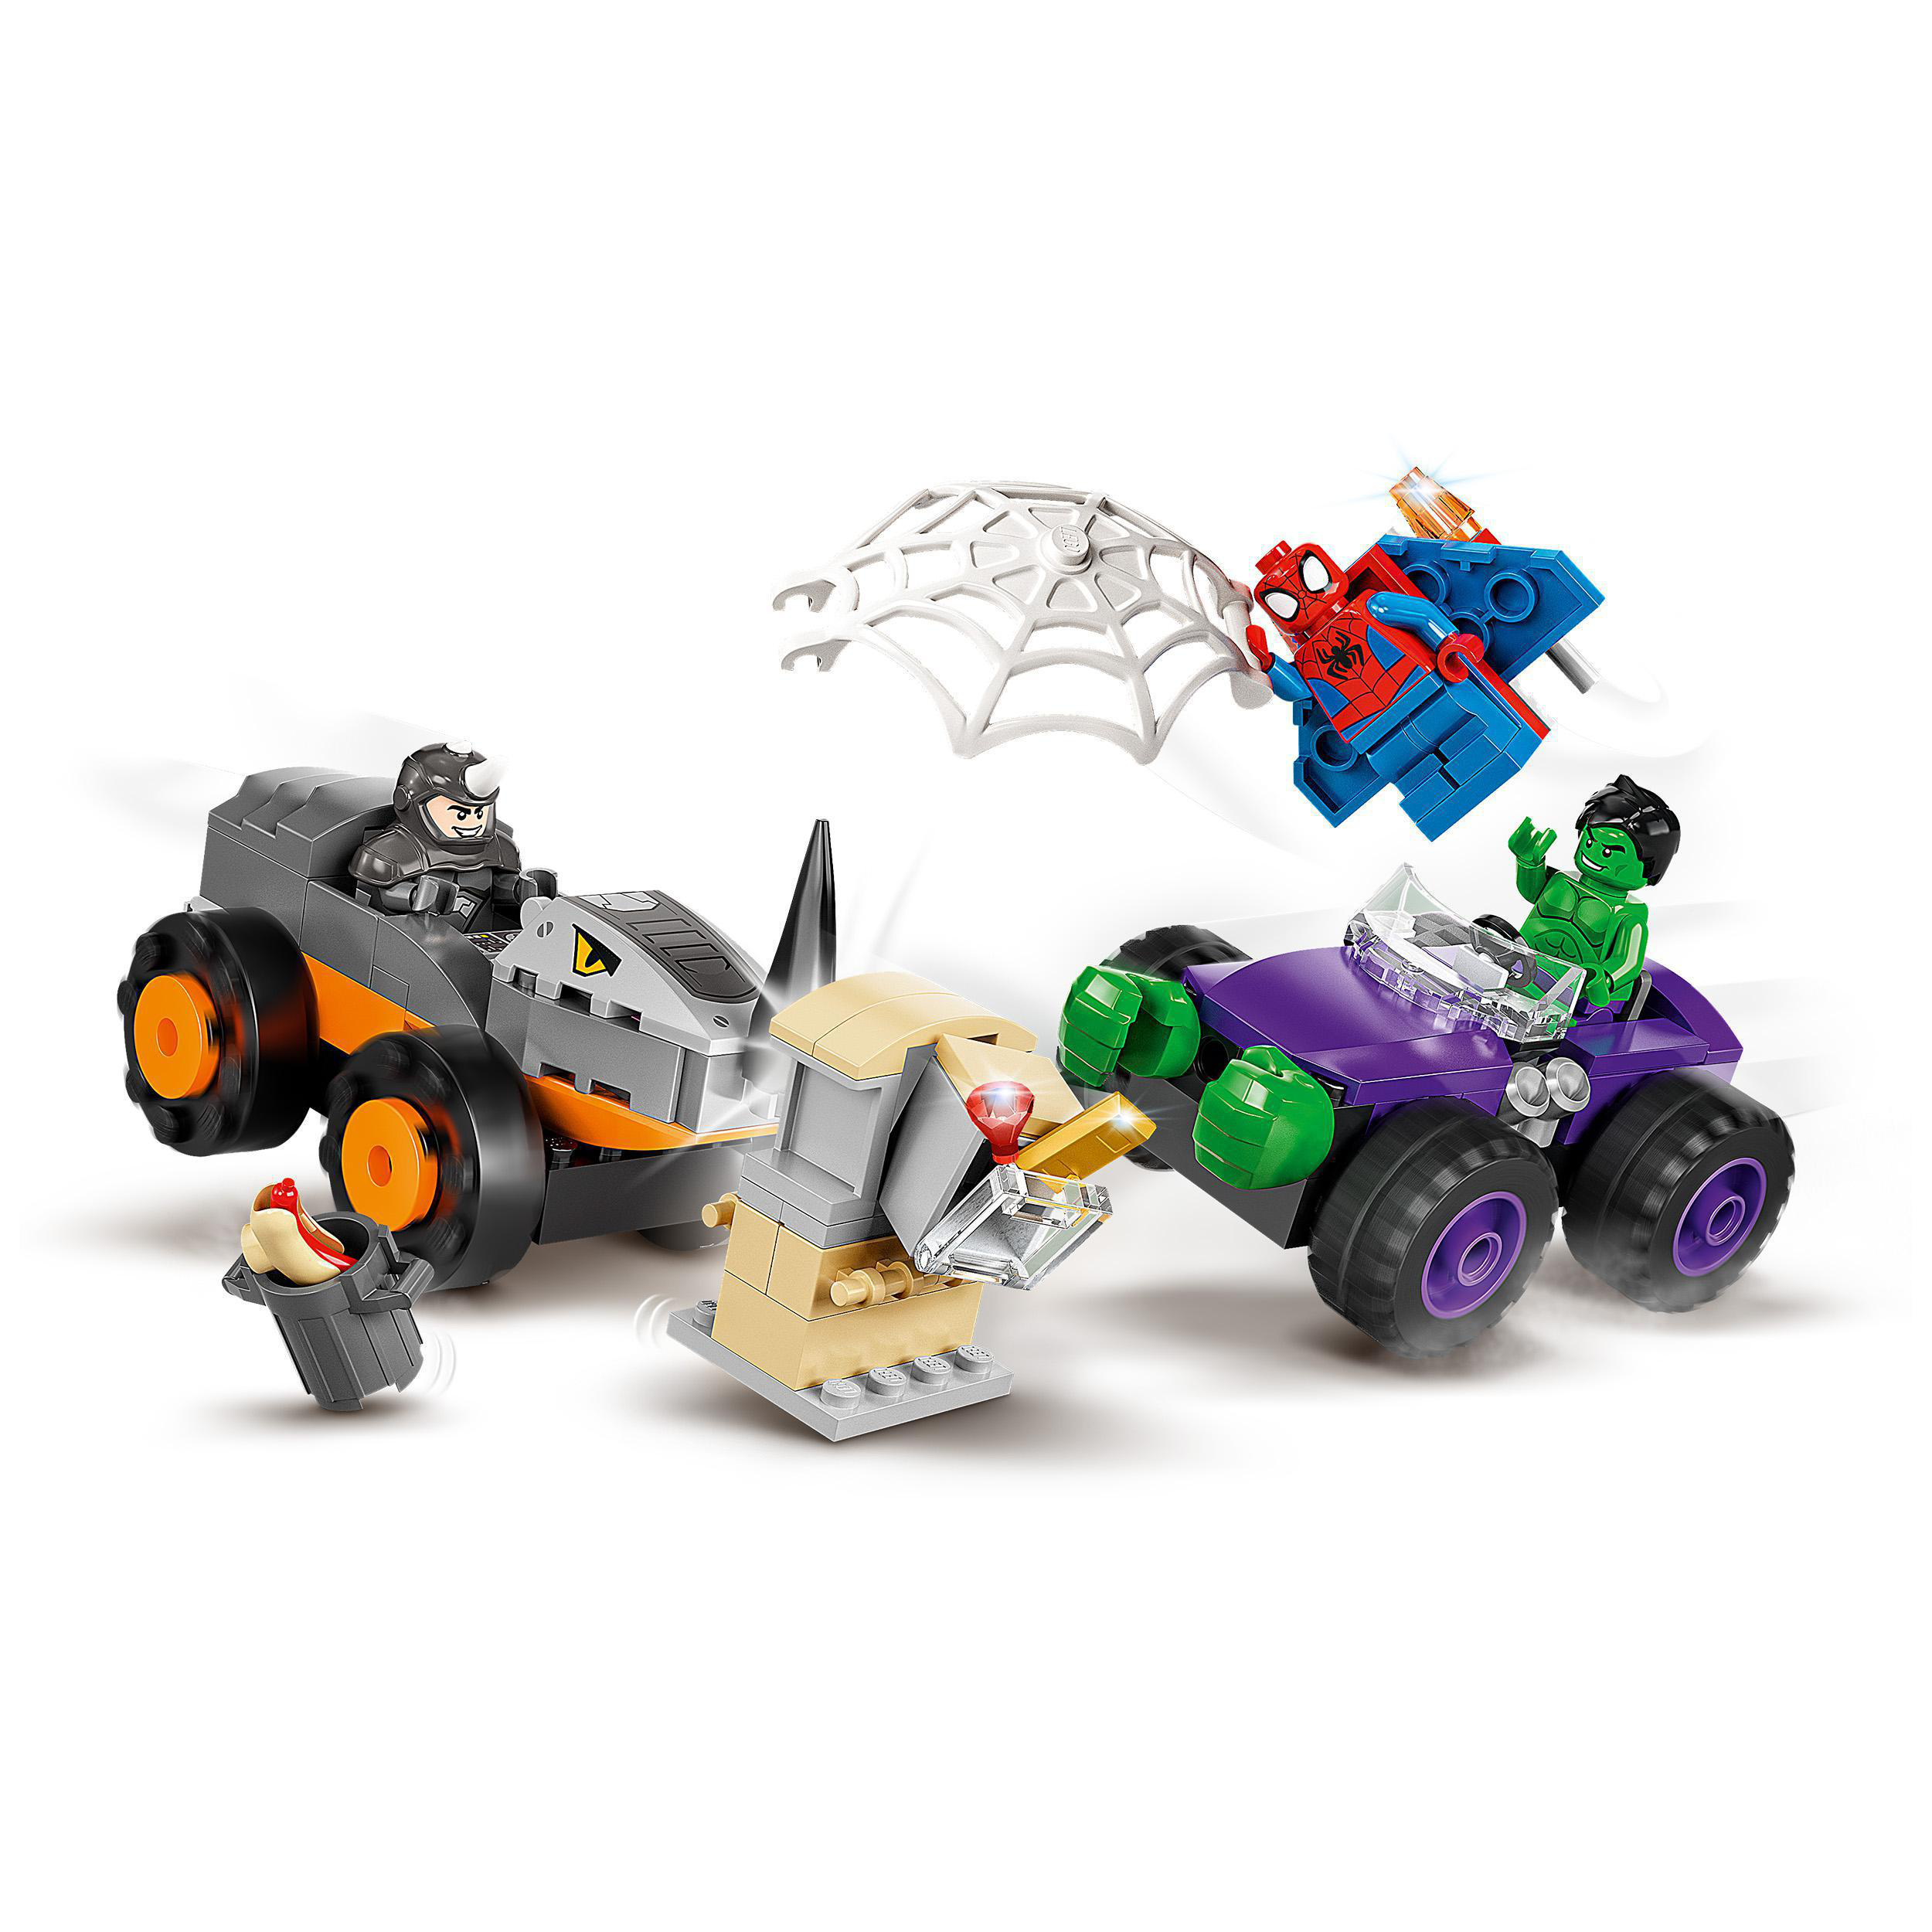 LEGO Marvel 10782 Mehrfarbig und Rhinos Hulks Bausatz, Truck-Duell